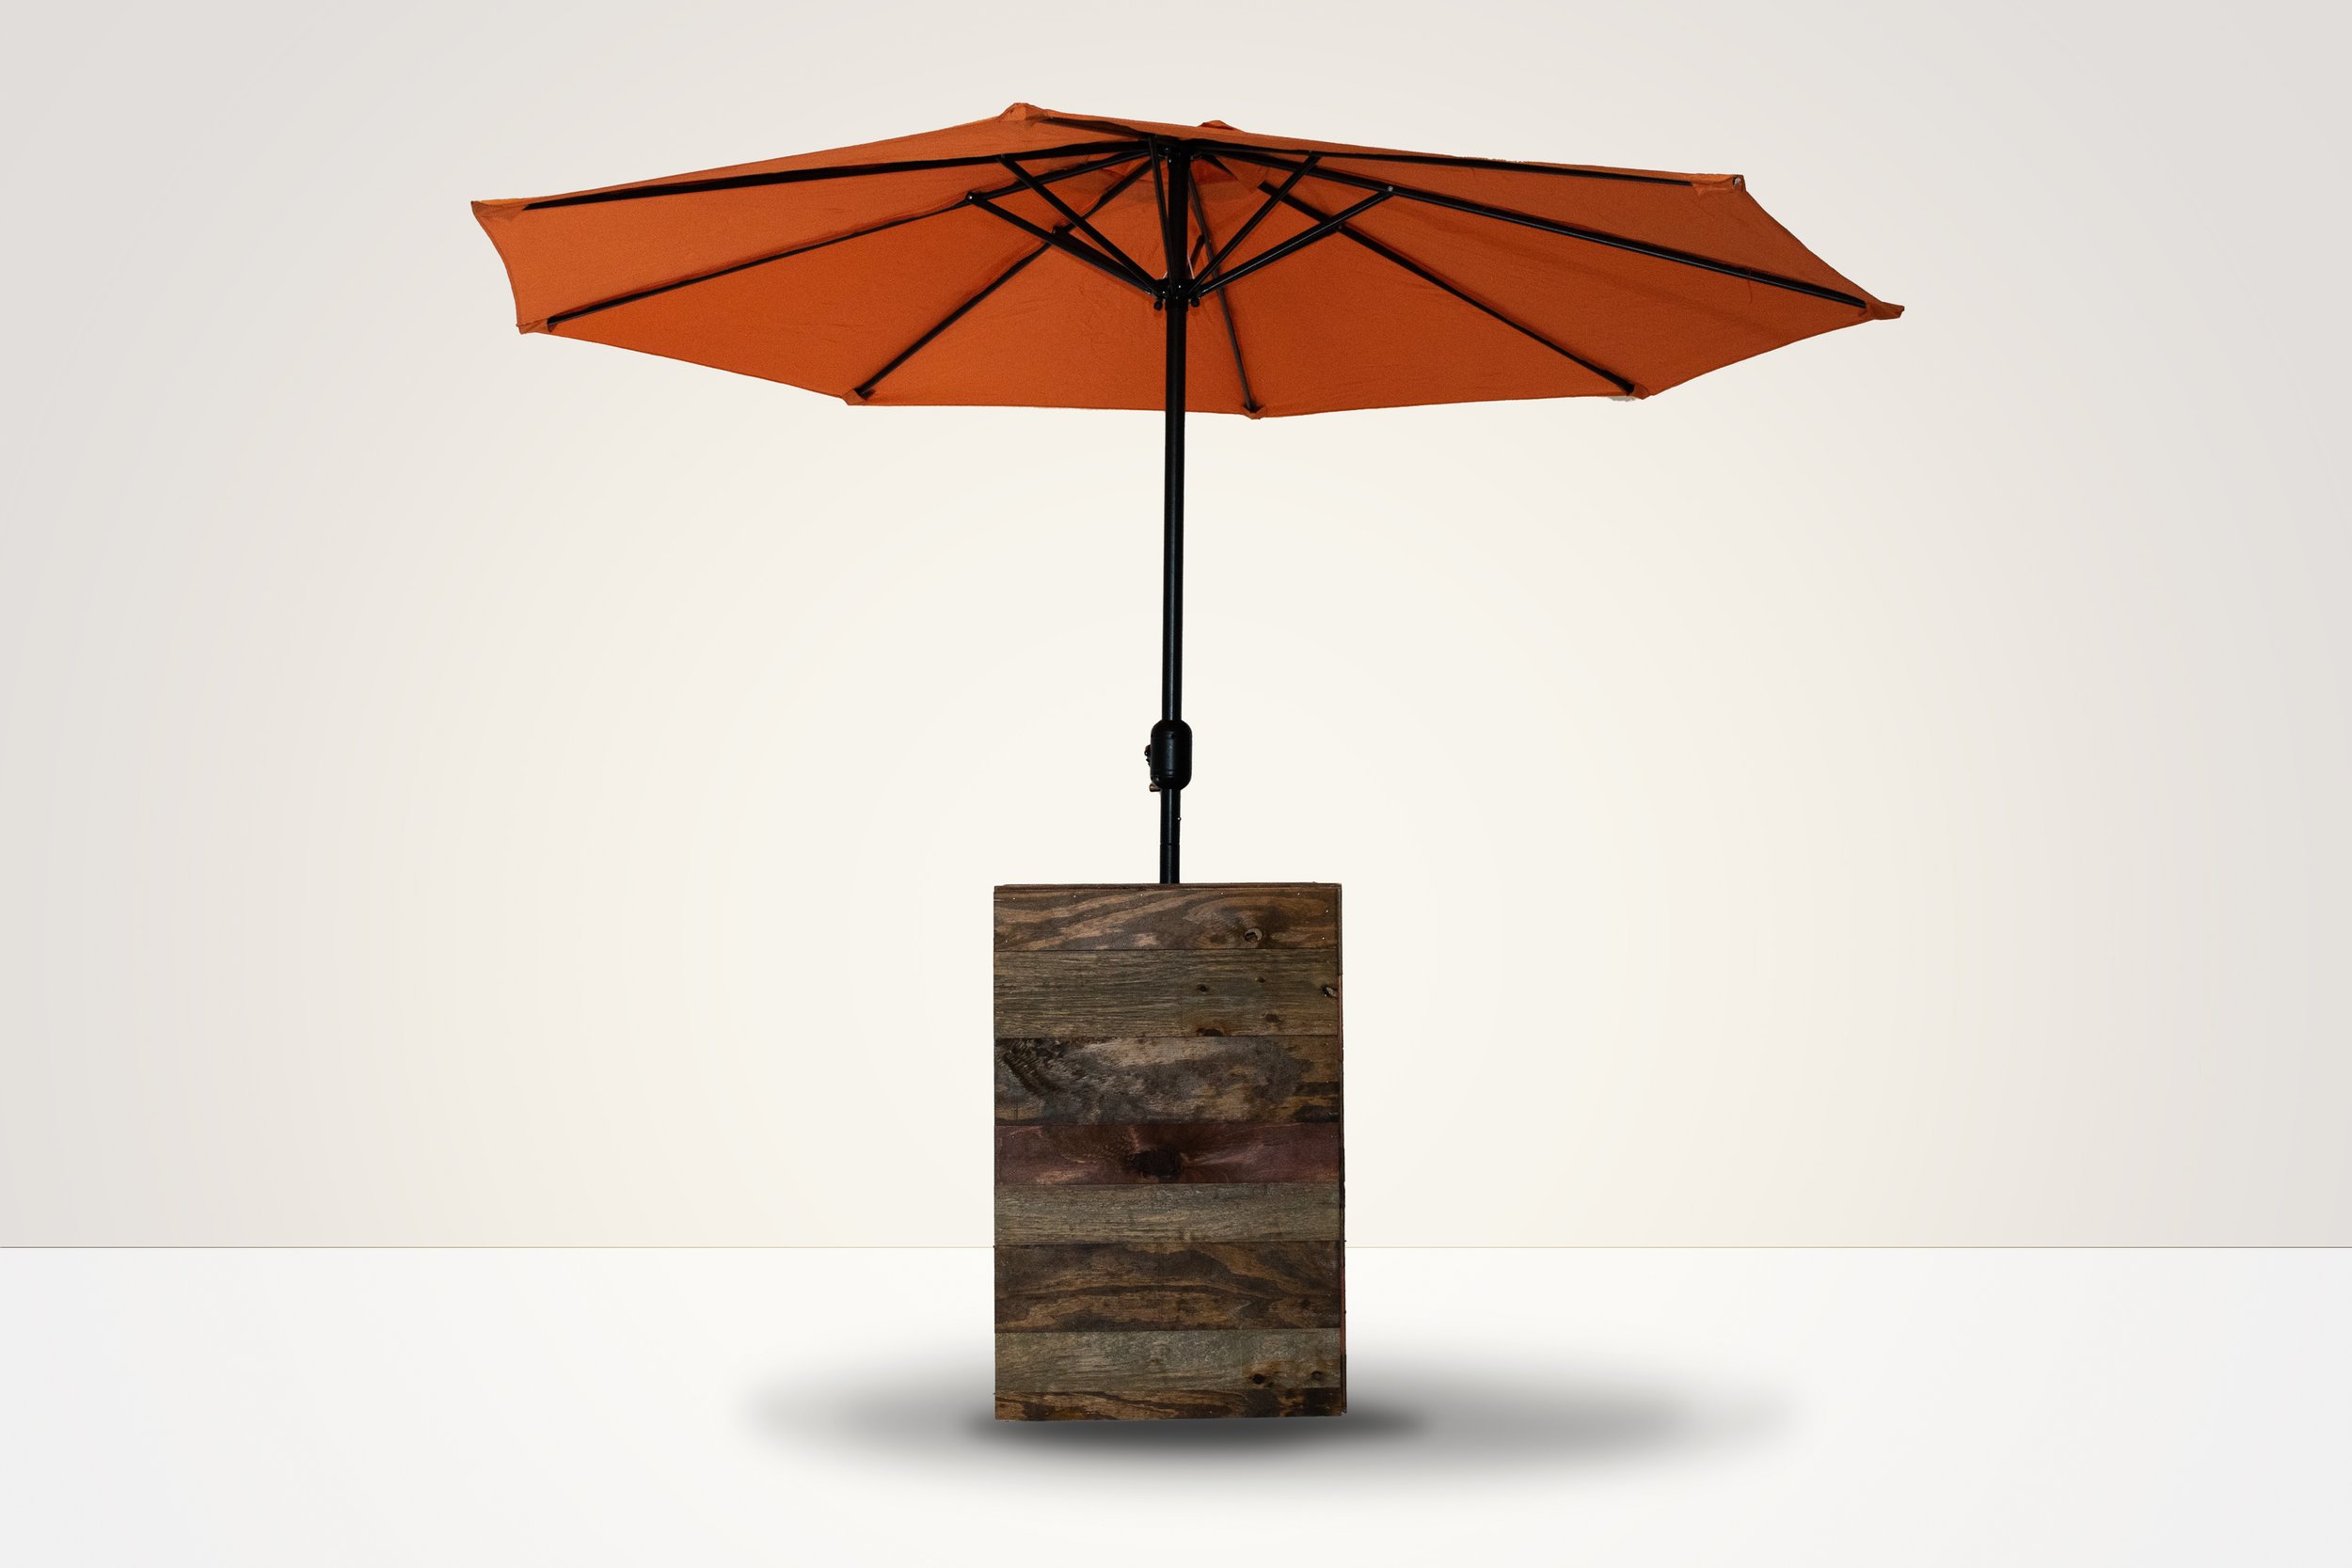 The Burnt Orange Umbrella